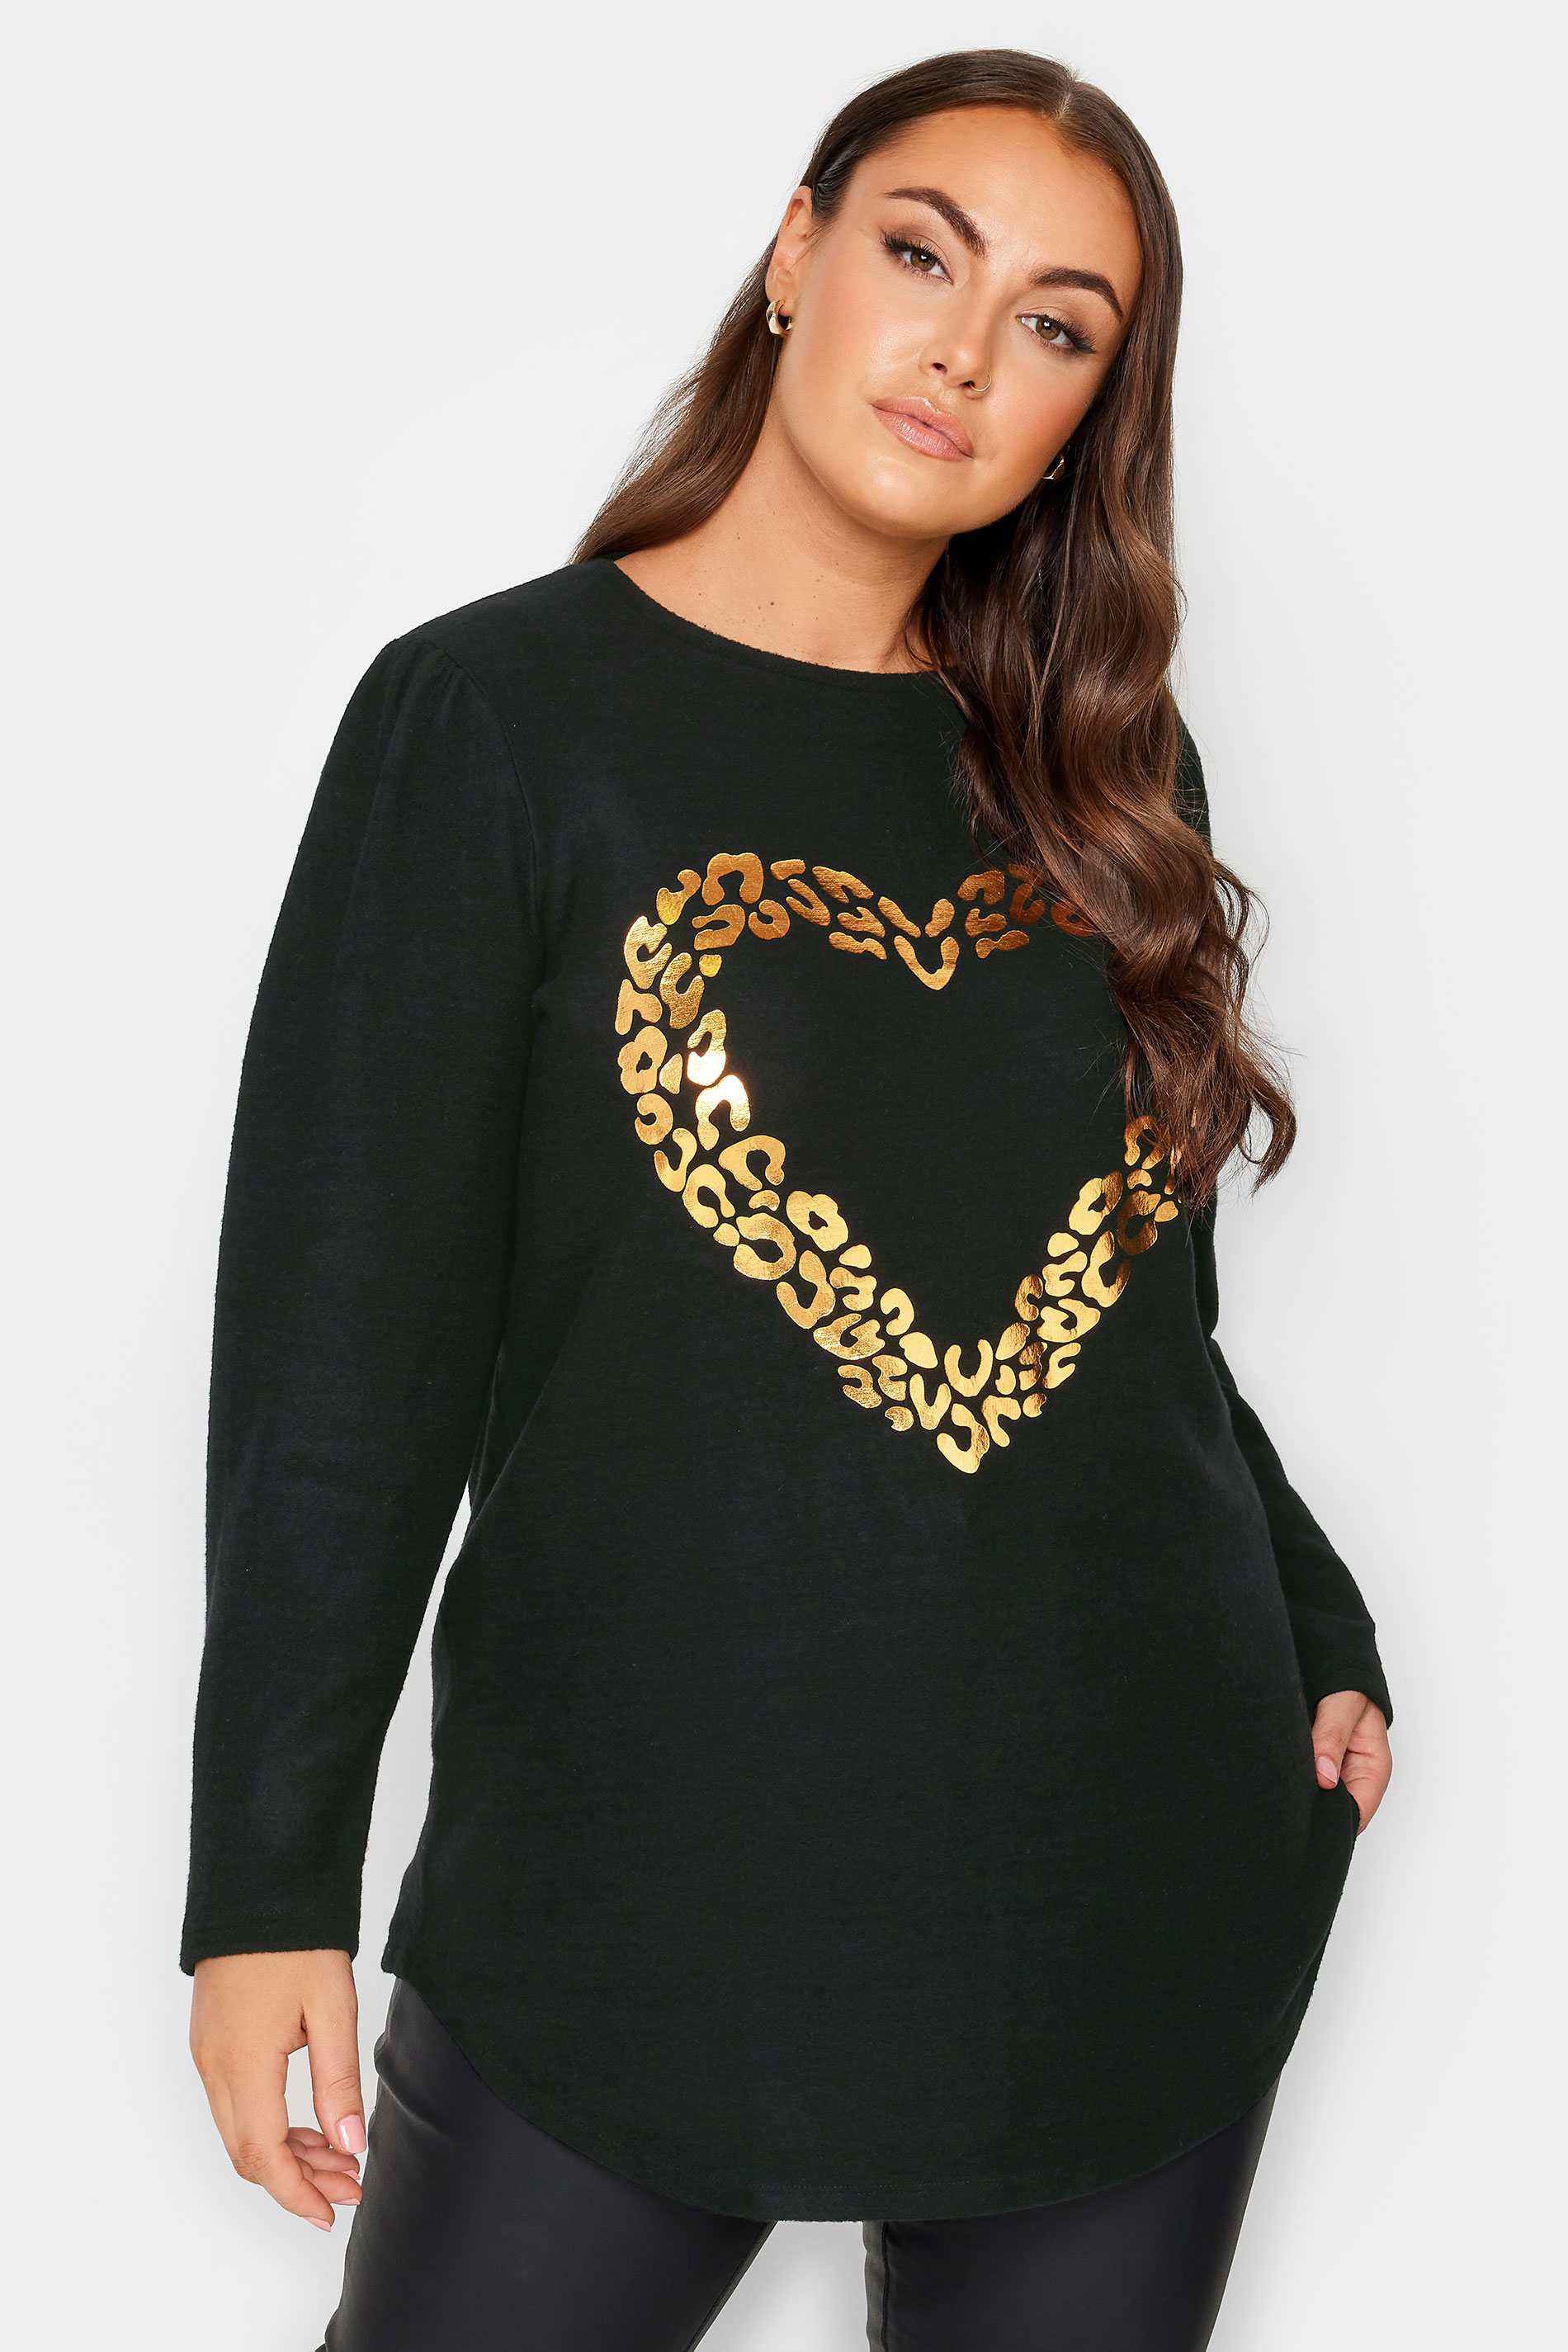 YOURS Curve Plus Size Black Leopard Foil Heart Top | Yours Clothing  1